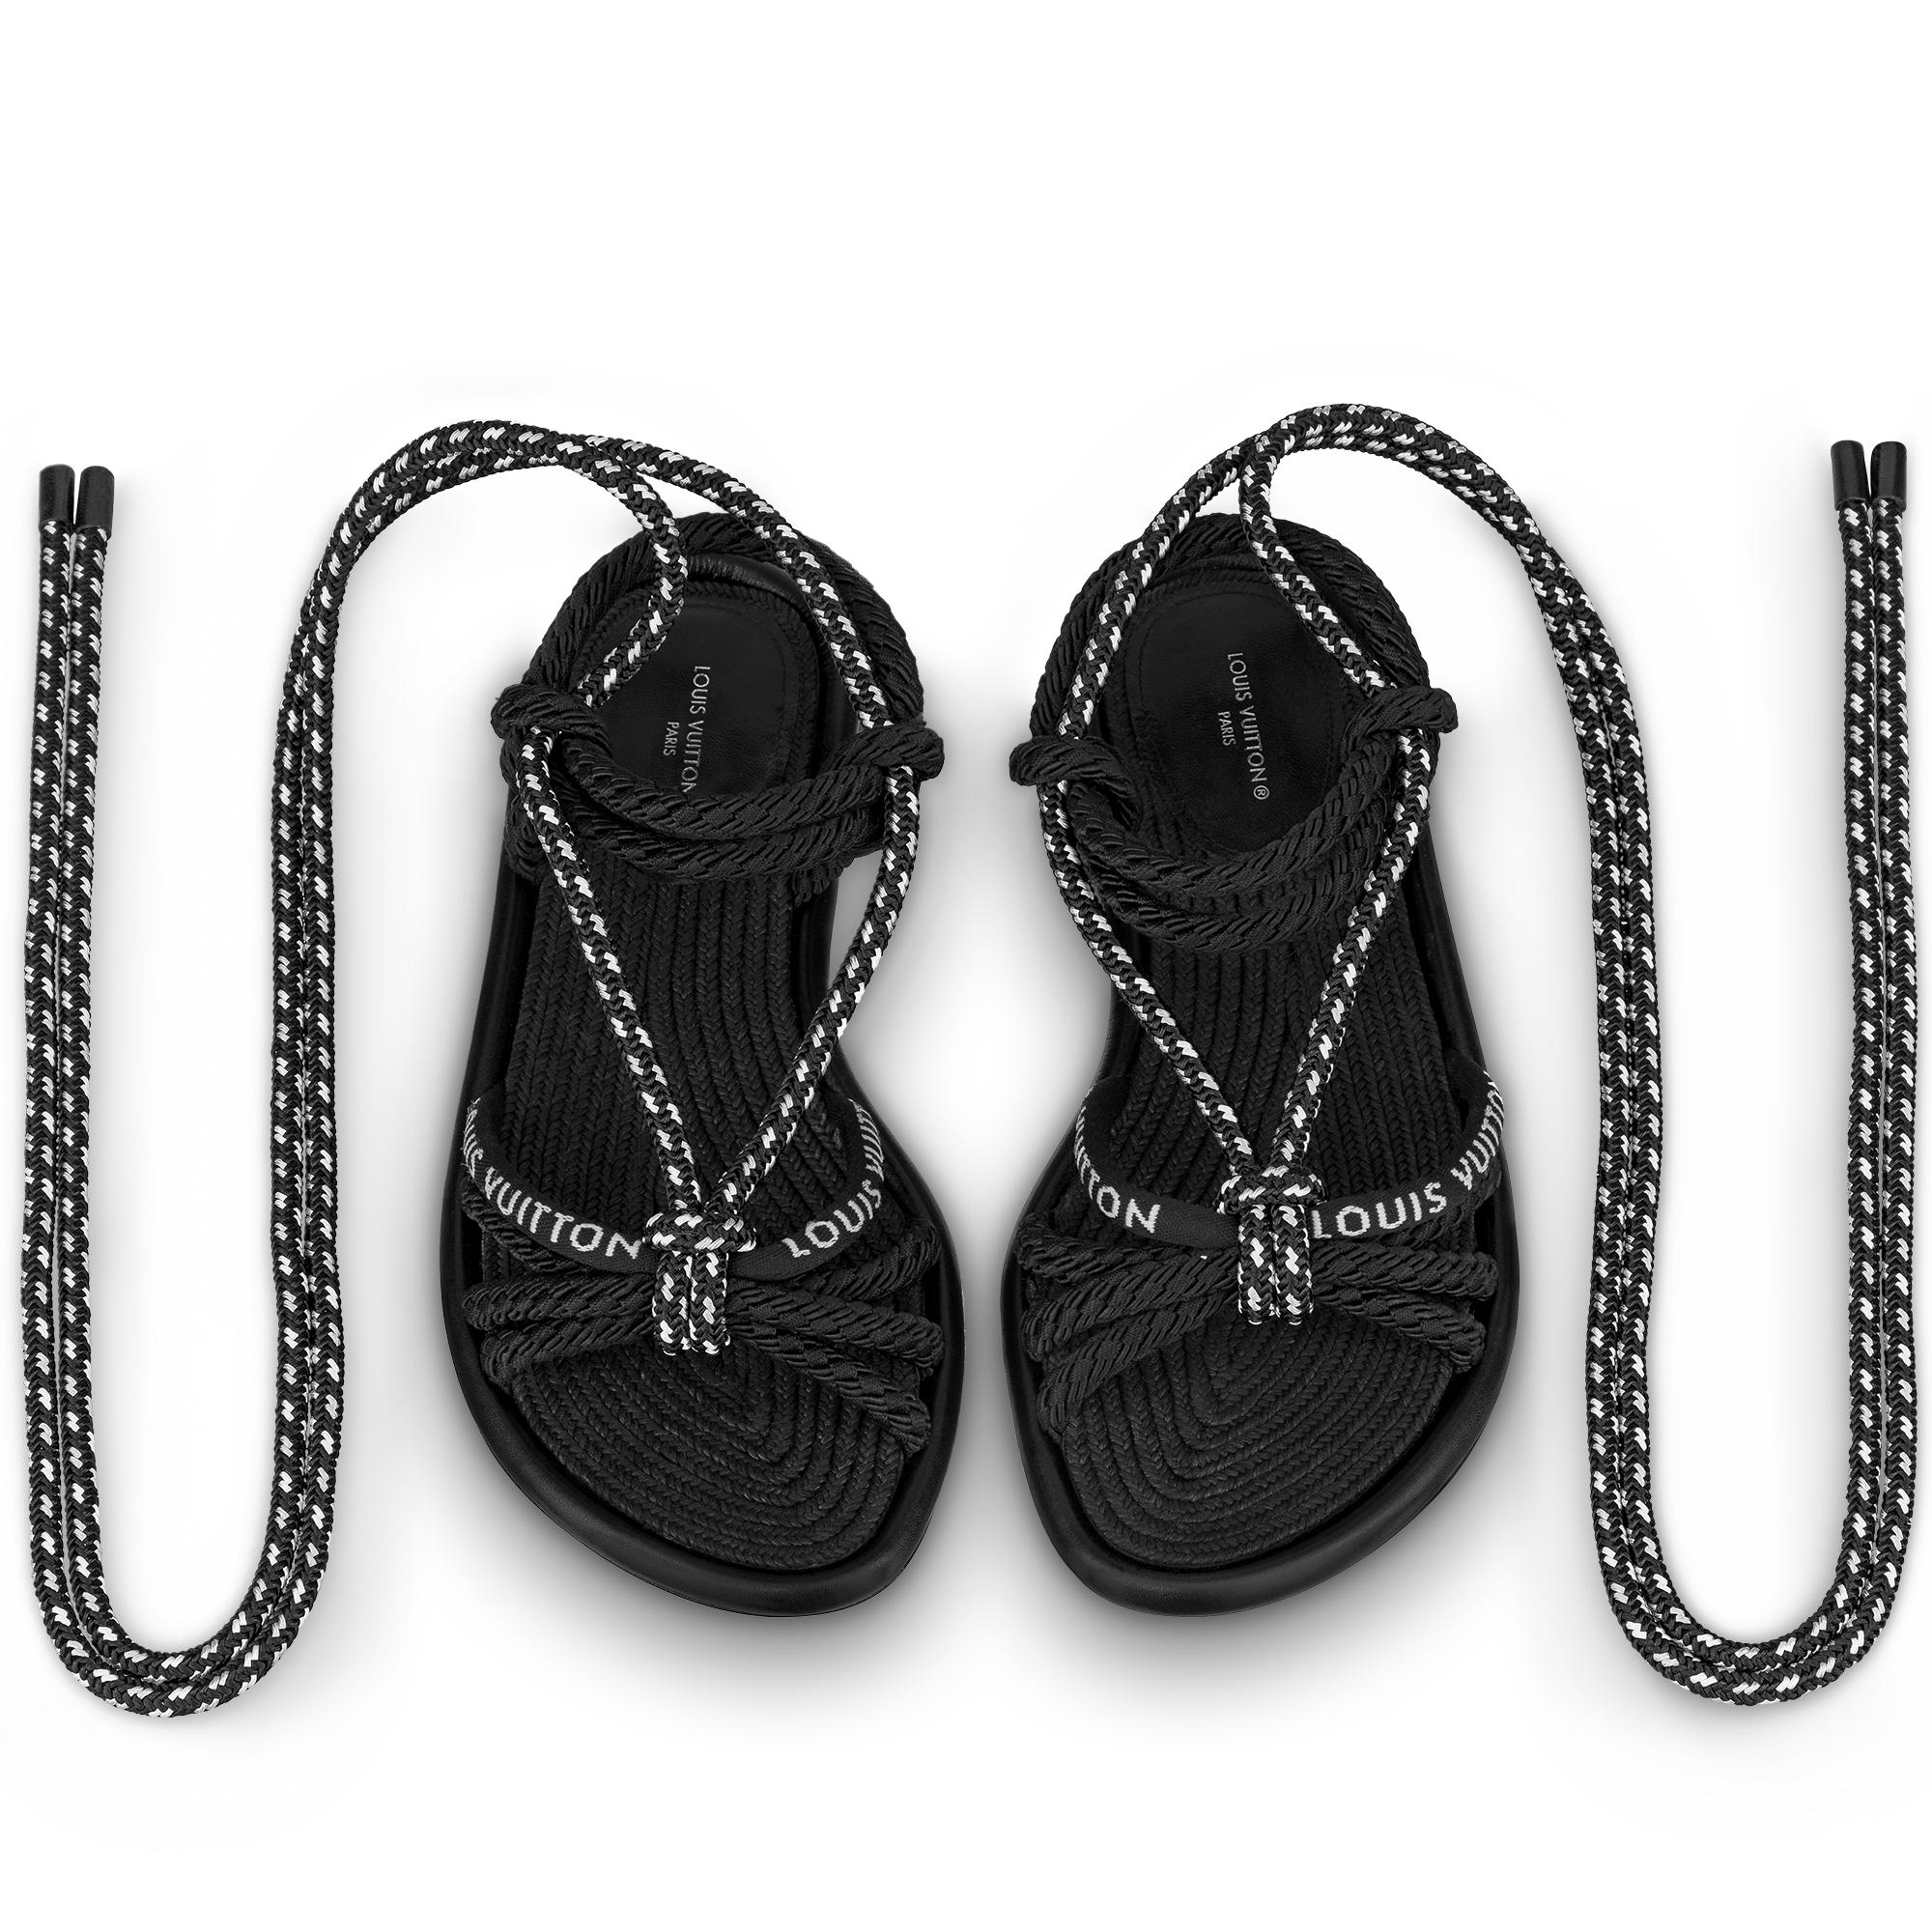 Louis Vuitton Nova Flat Sandal in Black - Shoes 1A9CZK - $122.20